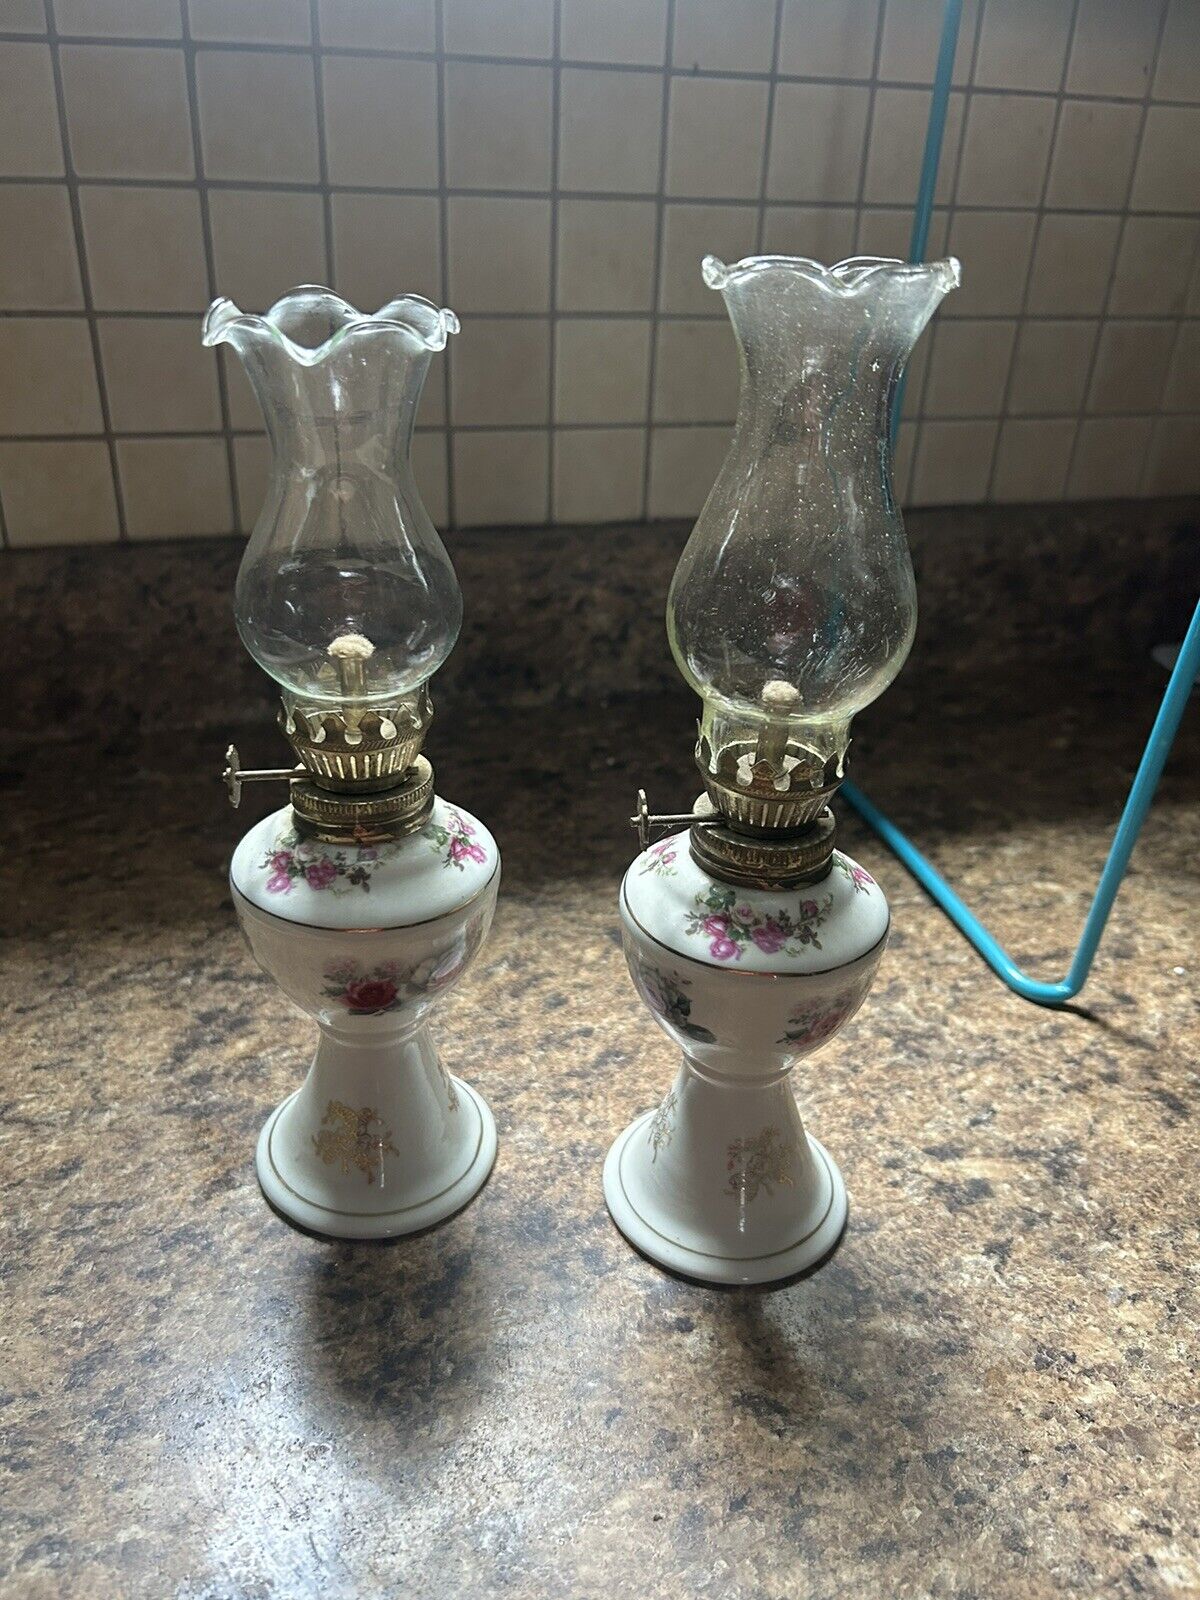 Pair Of OIL LAMPS Kerosene Lantern Vintage Flower Rose Design W Glass Flute